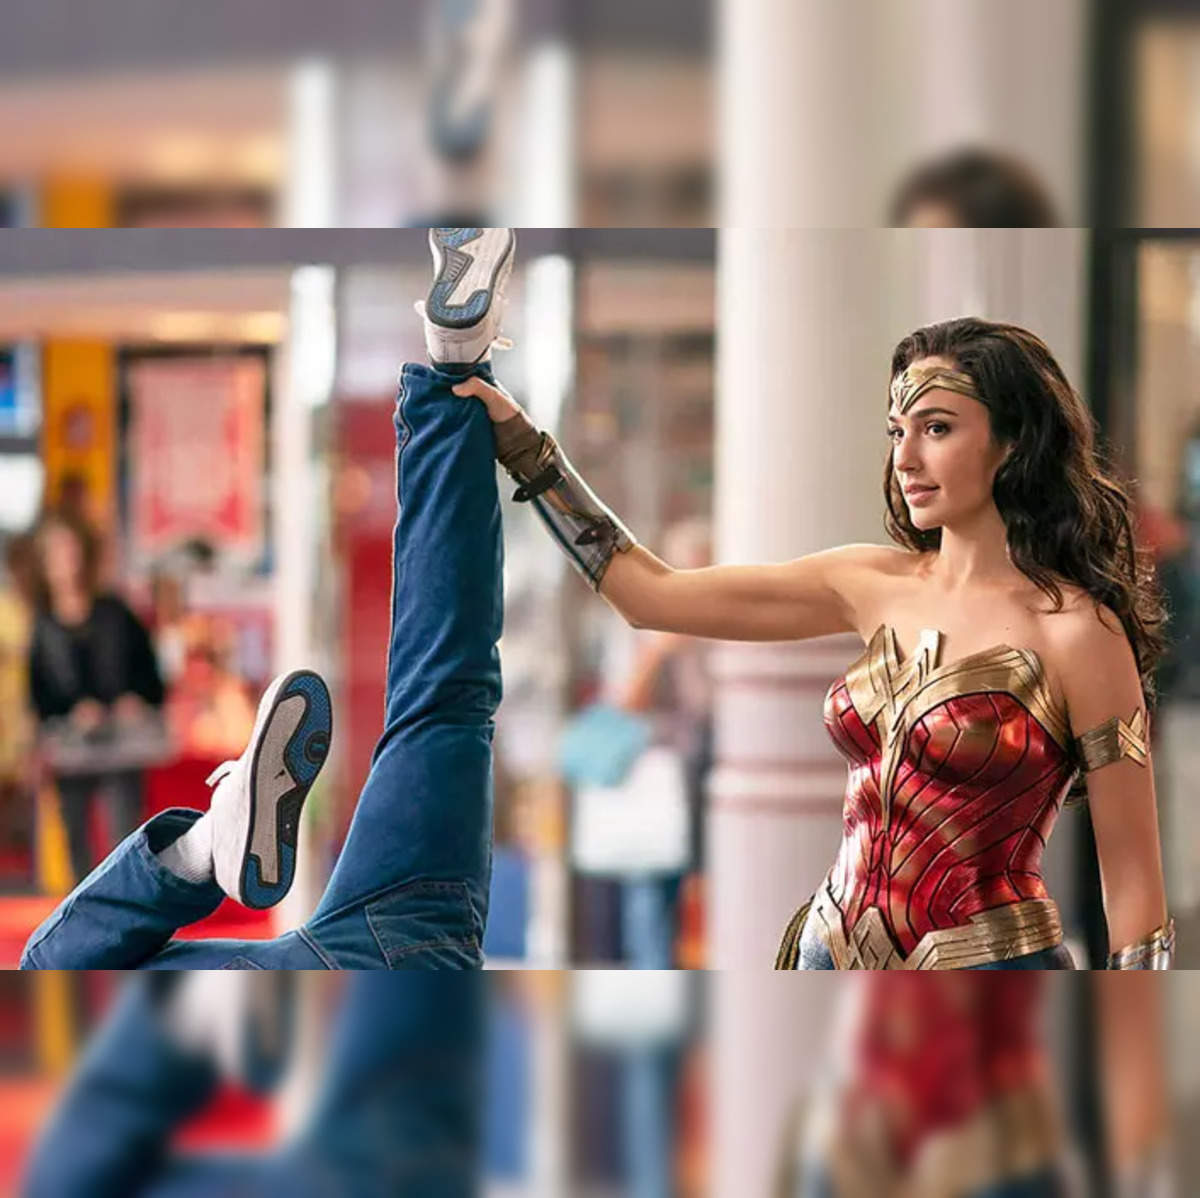 Wonder Woman Women's Corset & Panty Set